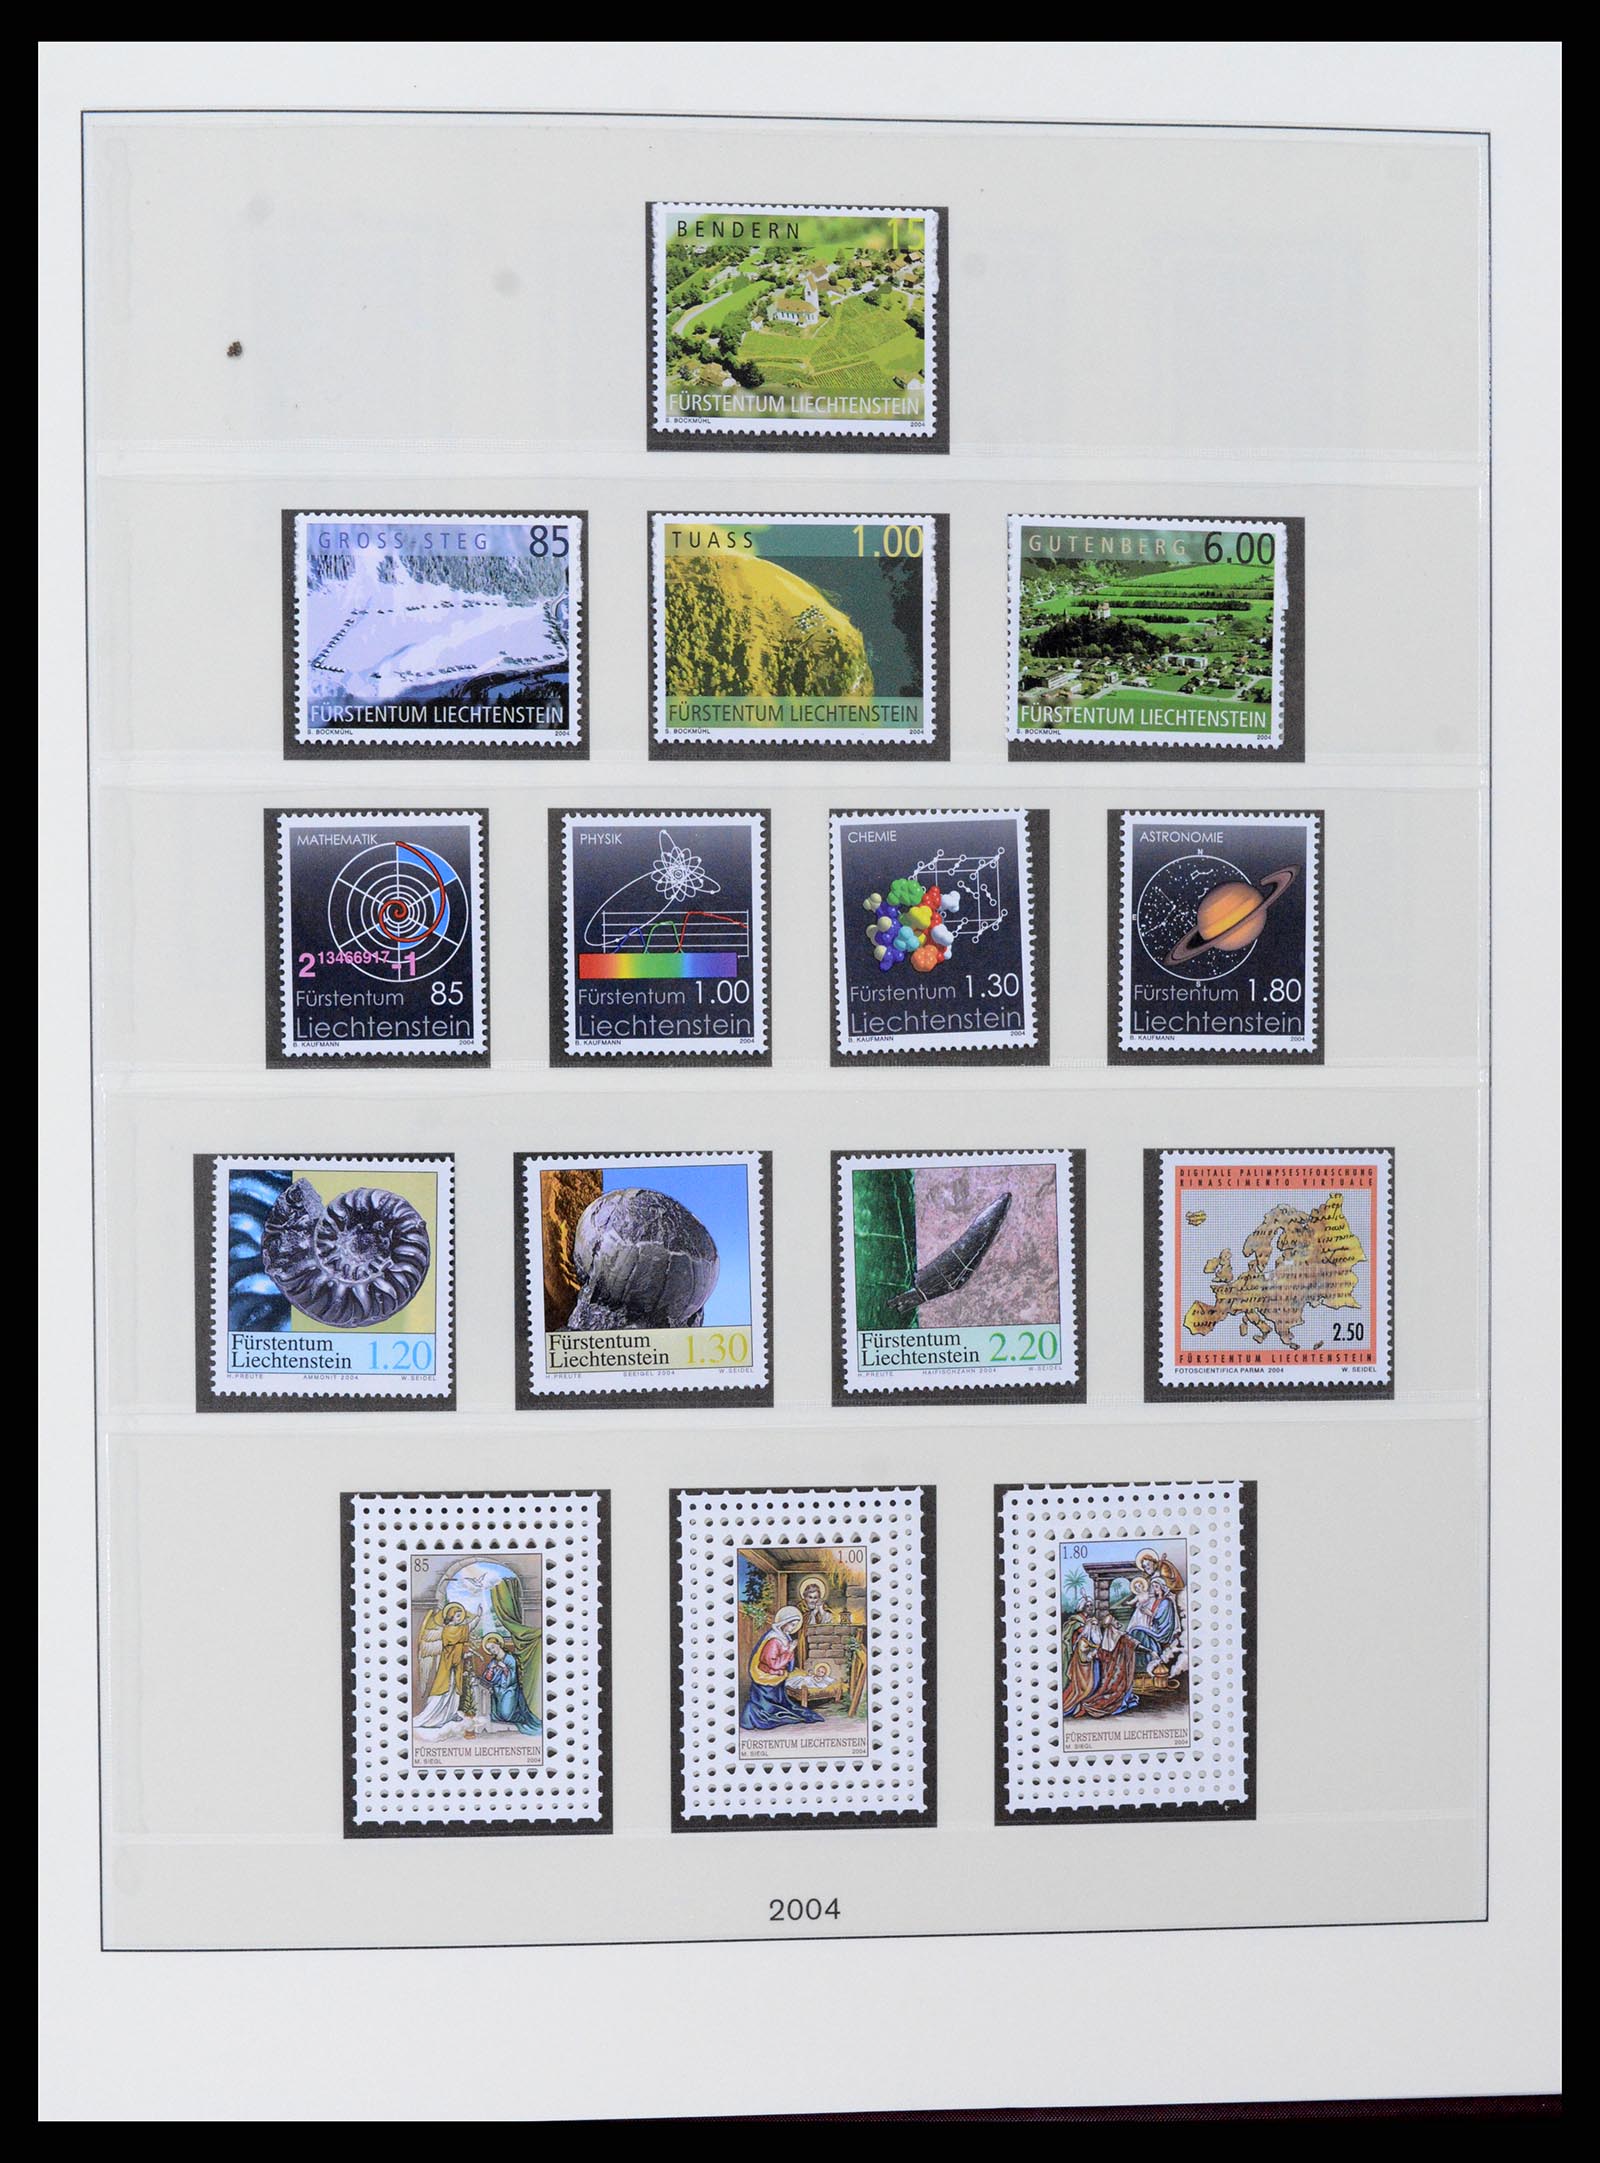 37295 137 - Stamp collection 37295 Liechtenstein 1912-2009.